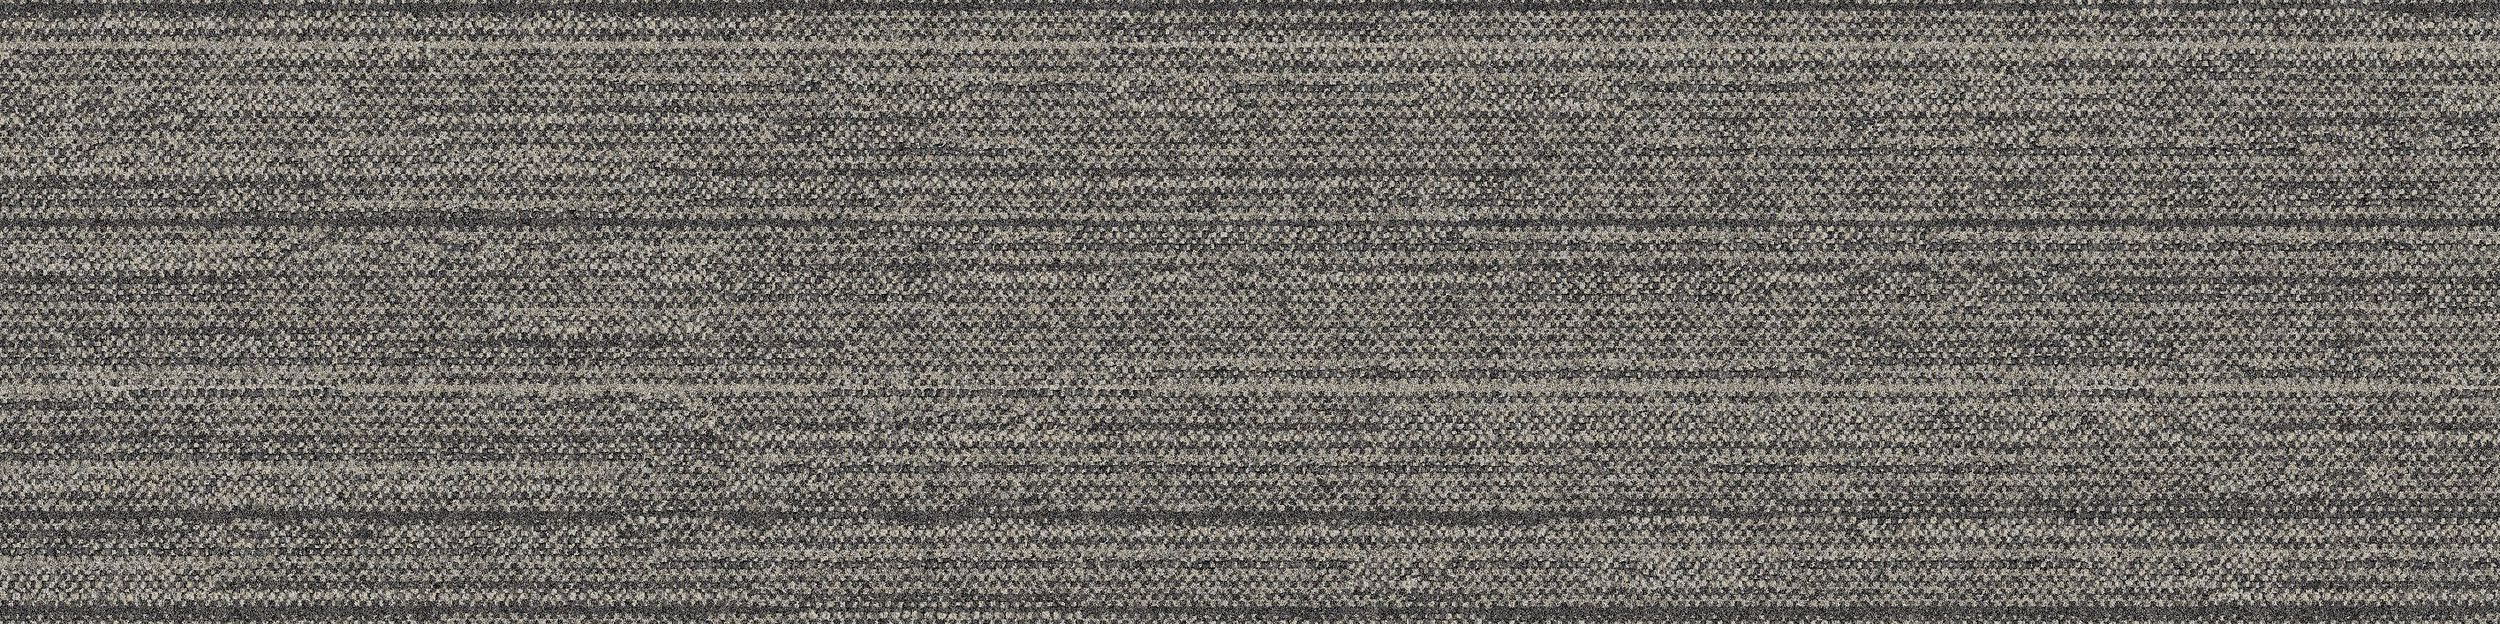 WW880 Carpet Tile In Natural Loom image number 2